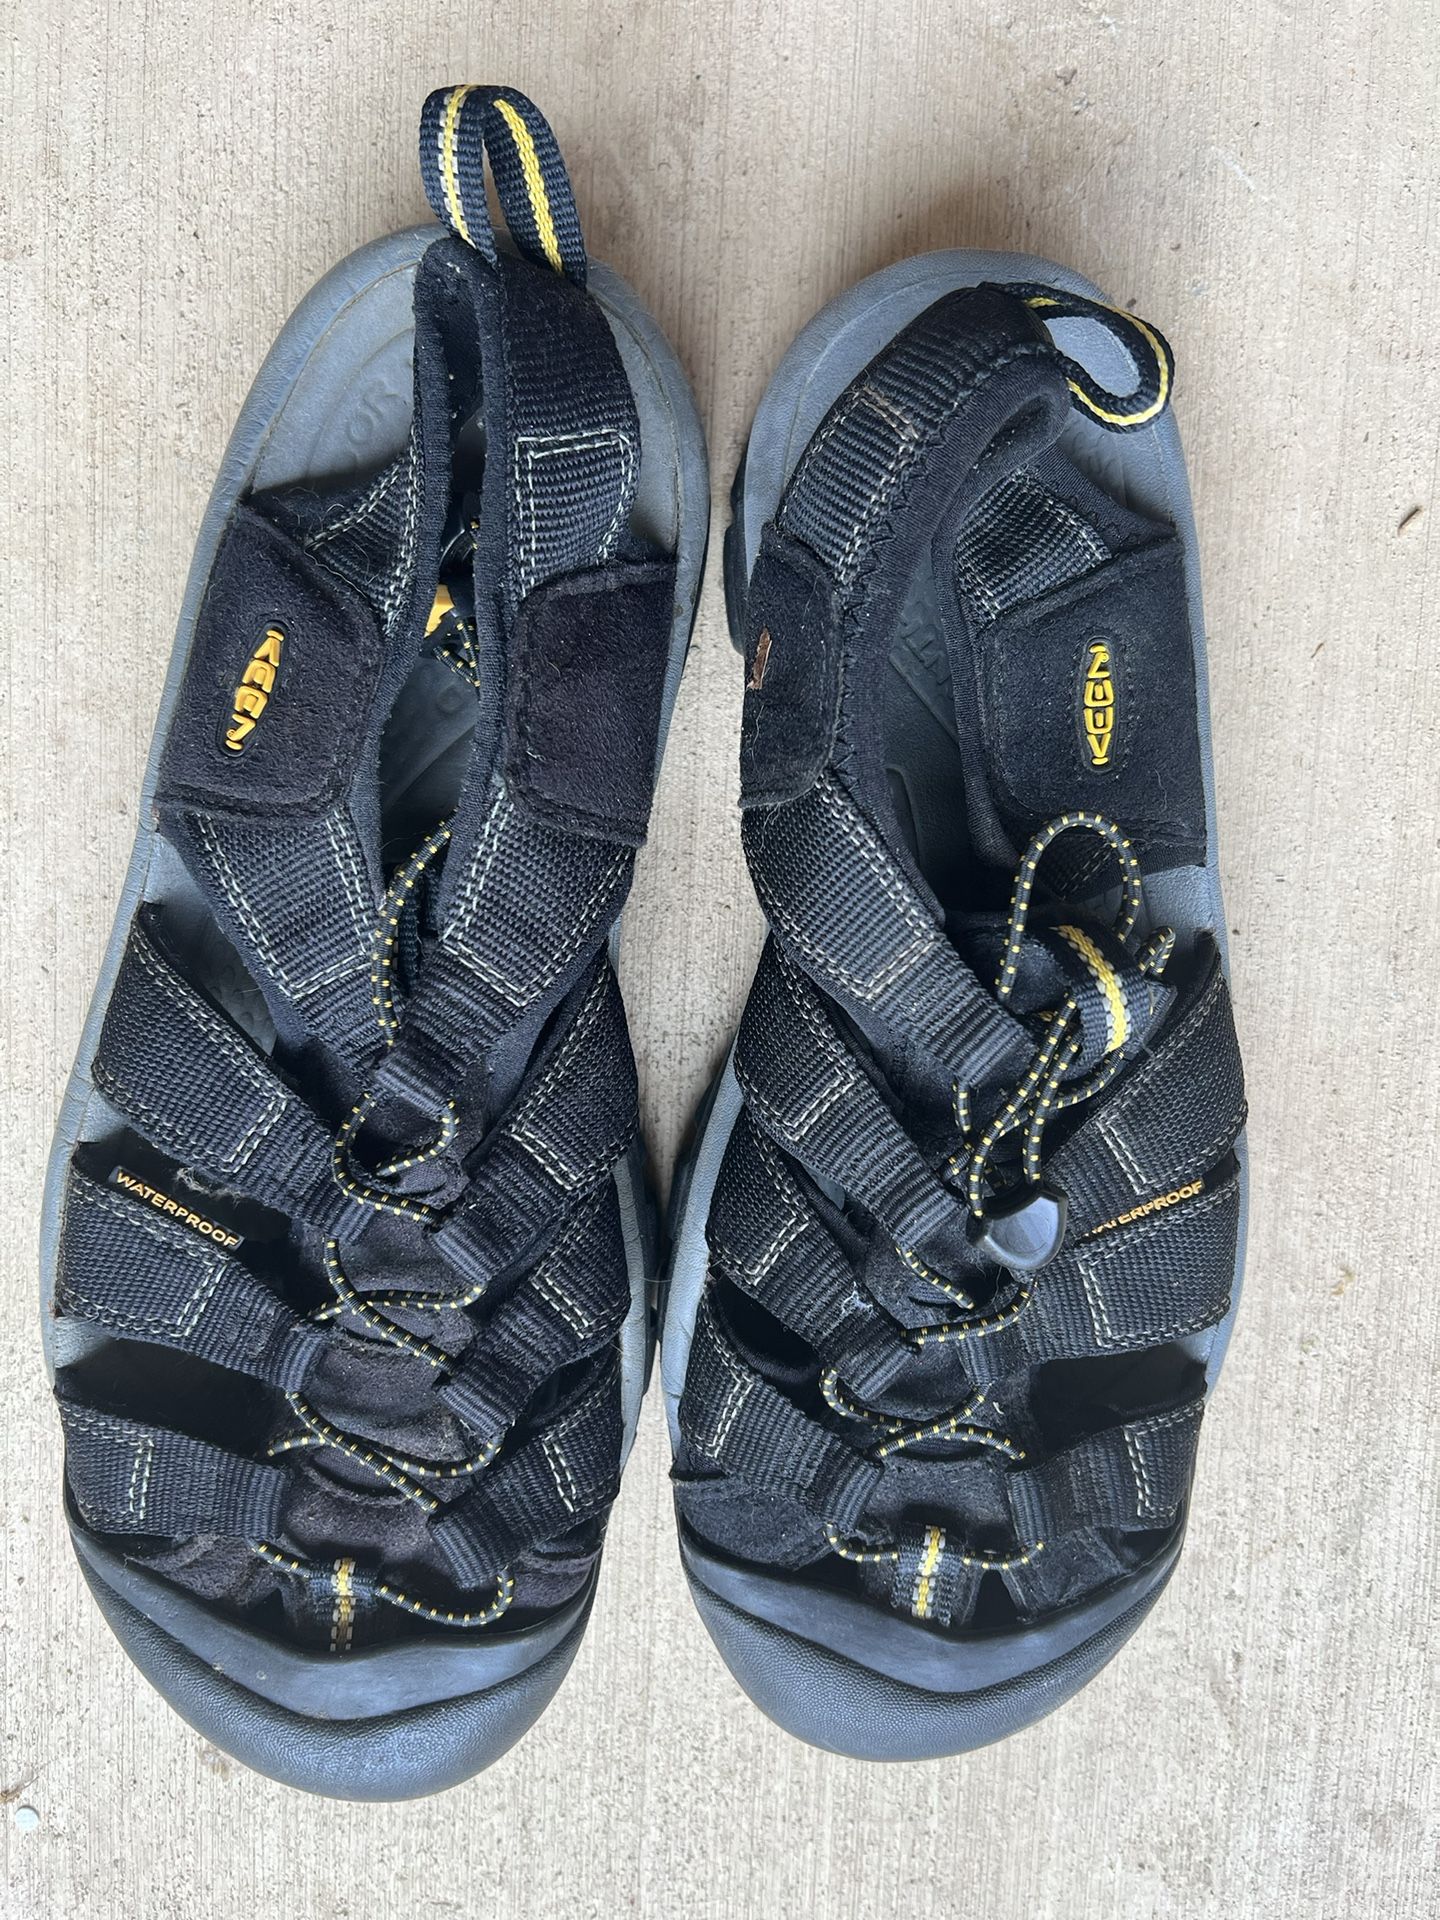 KEEN Men’s Newport Outdoor Adjustable Drawstring Sandal